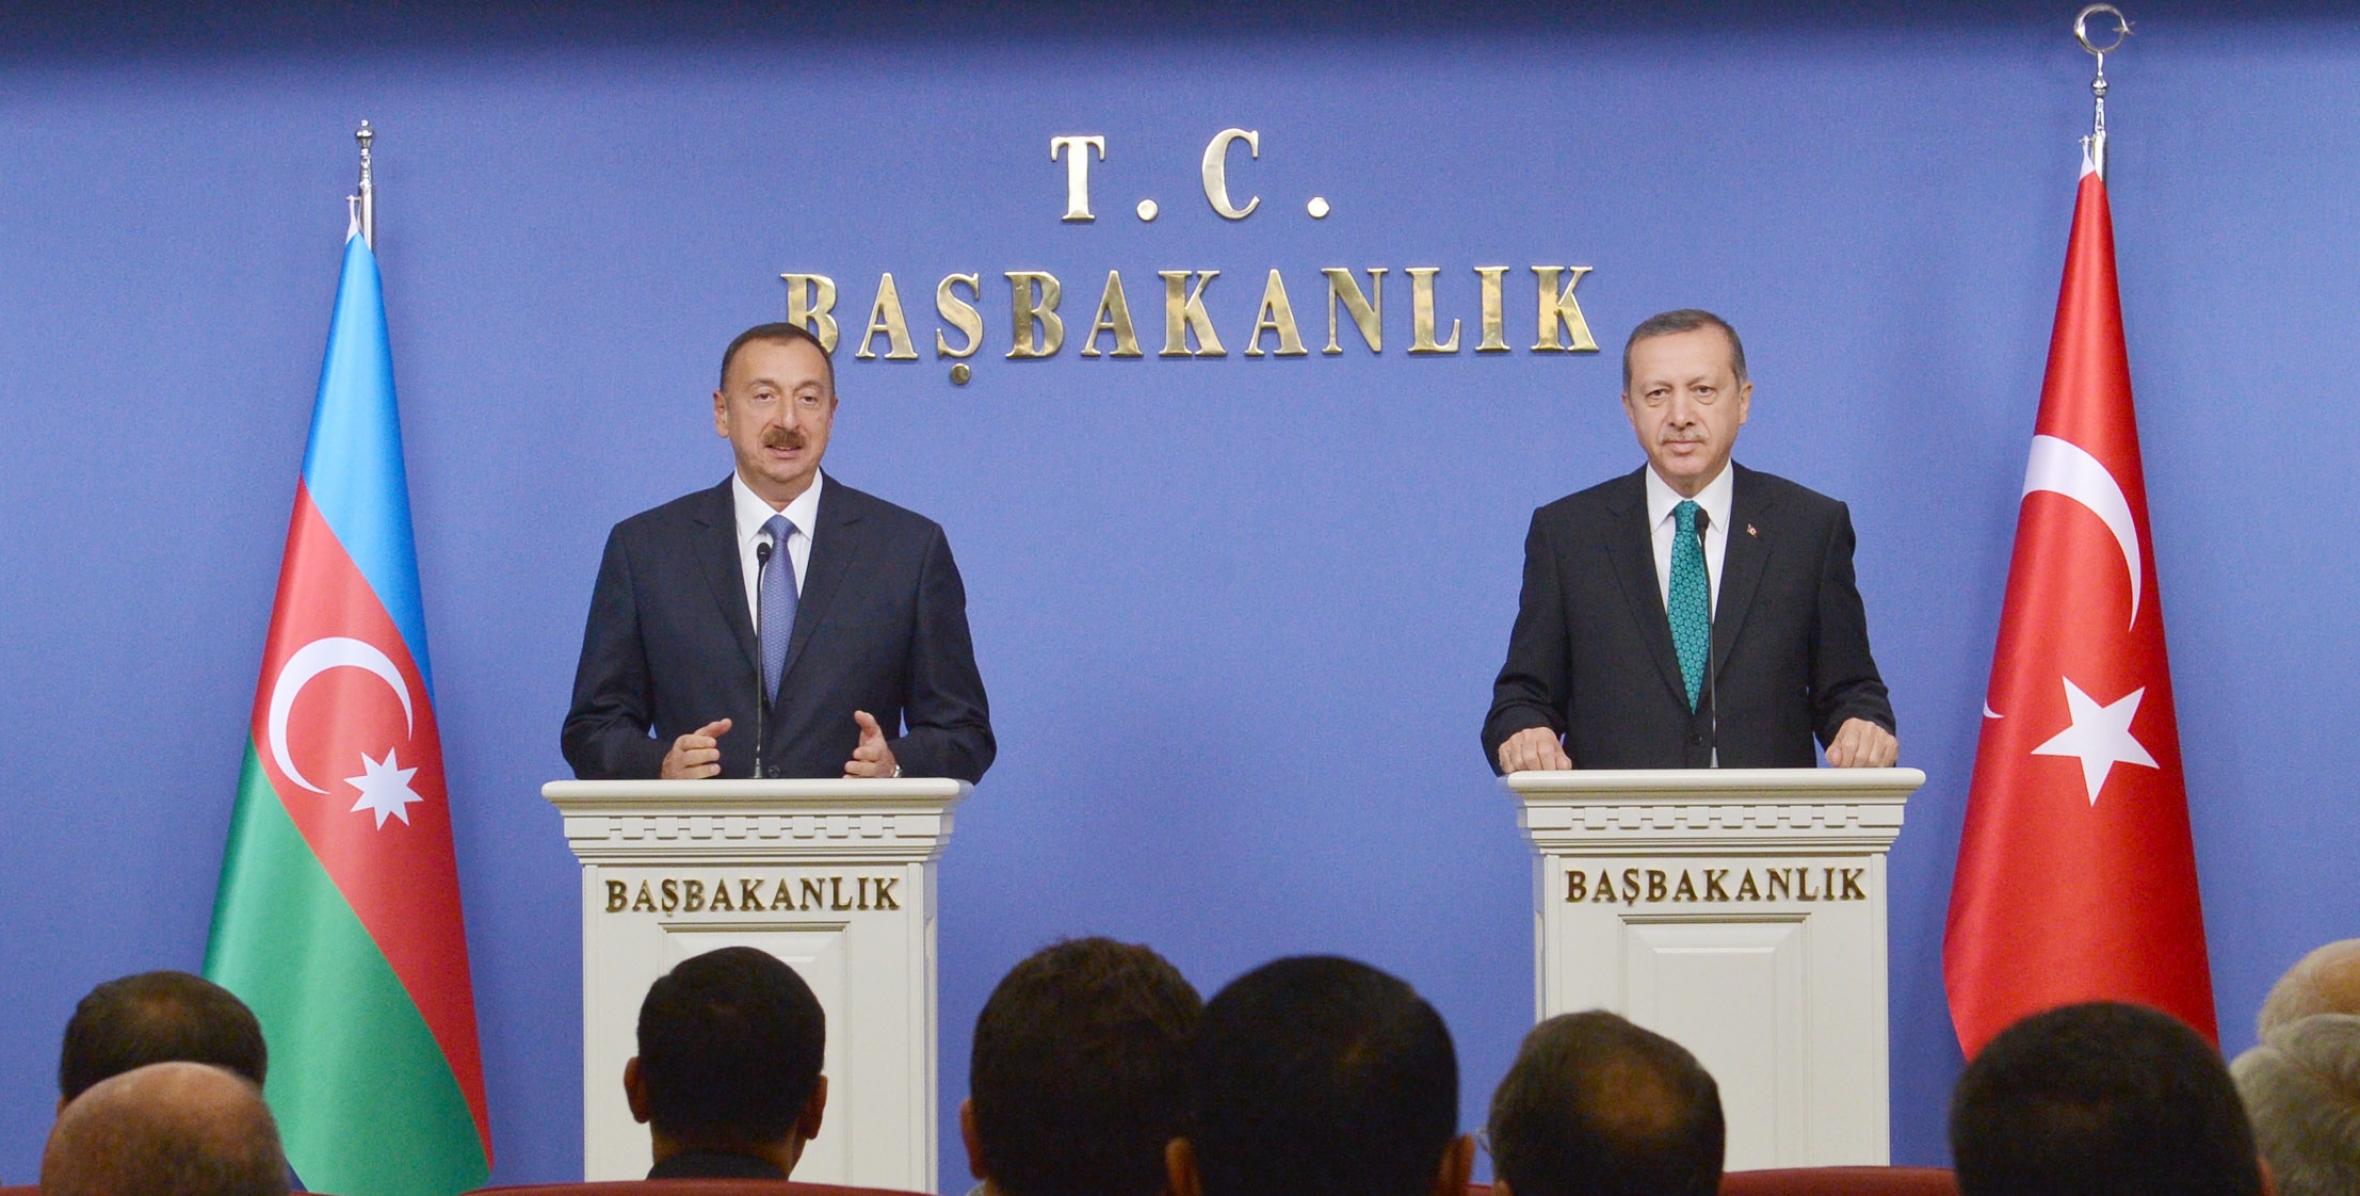 Состоялась пресс-конференция Ильхама Алиева и премьер-министра Турции Реджепа Тайиба Эрдогана